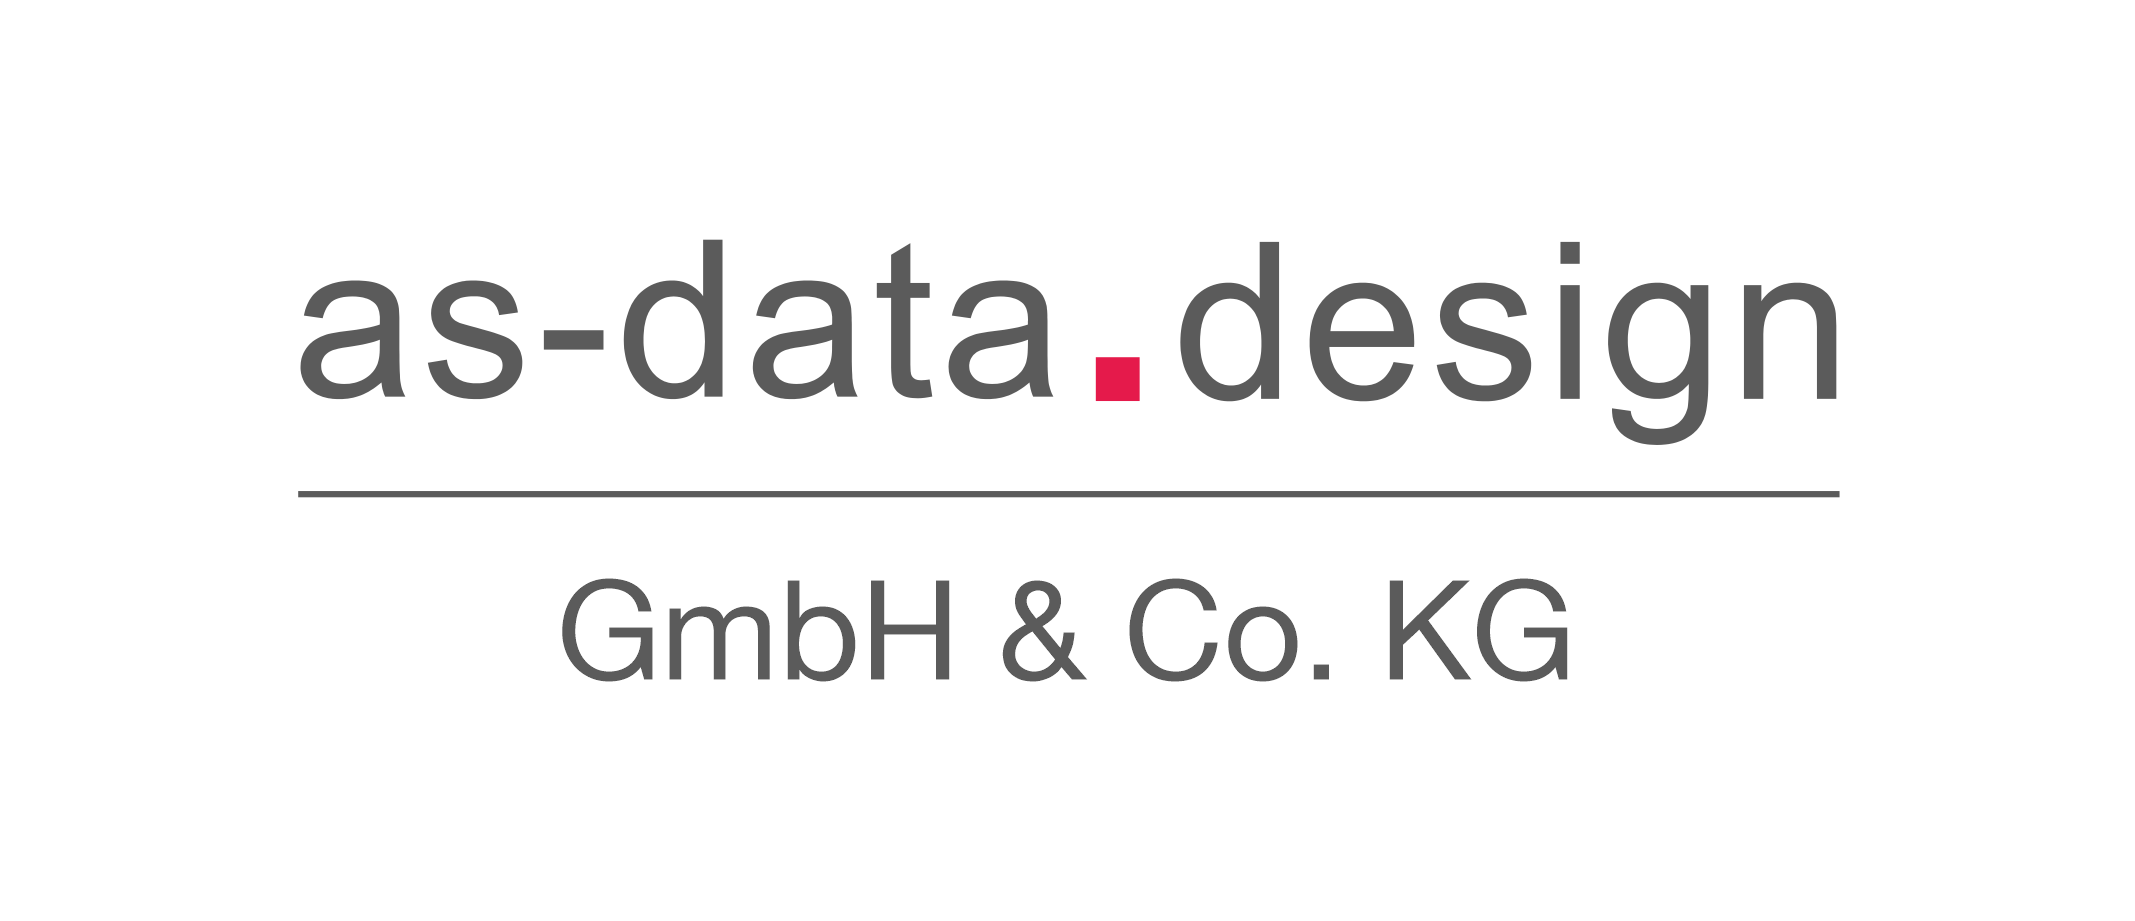 Logo as-data.design